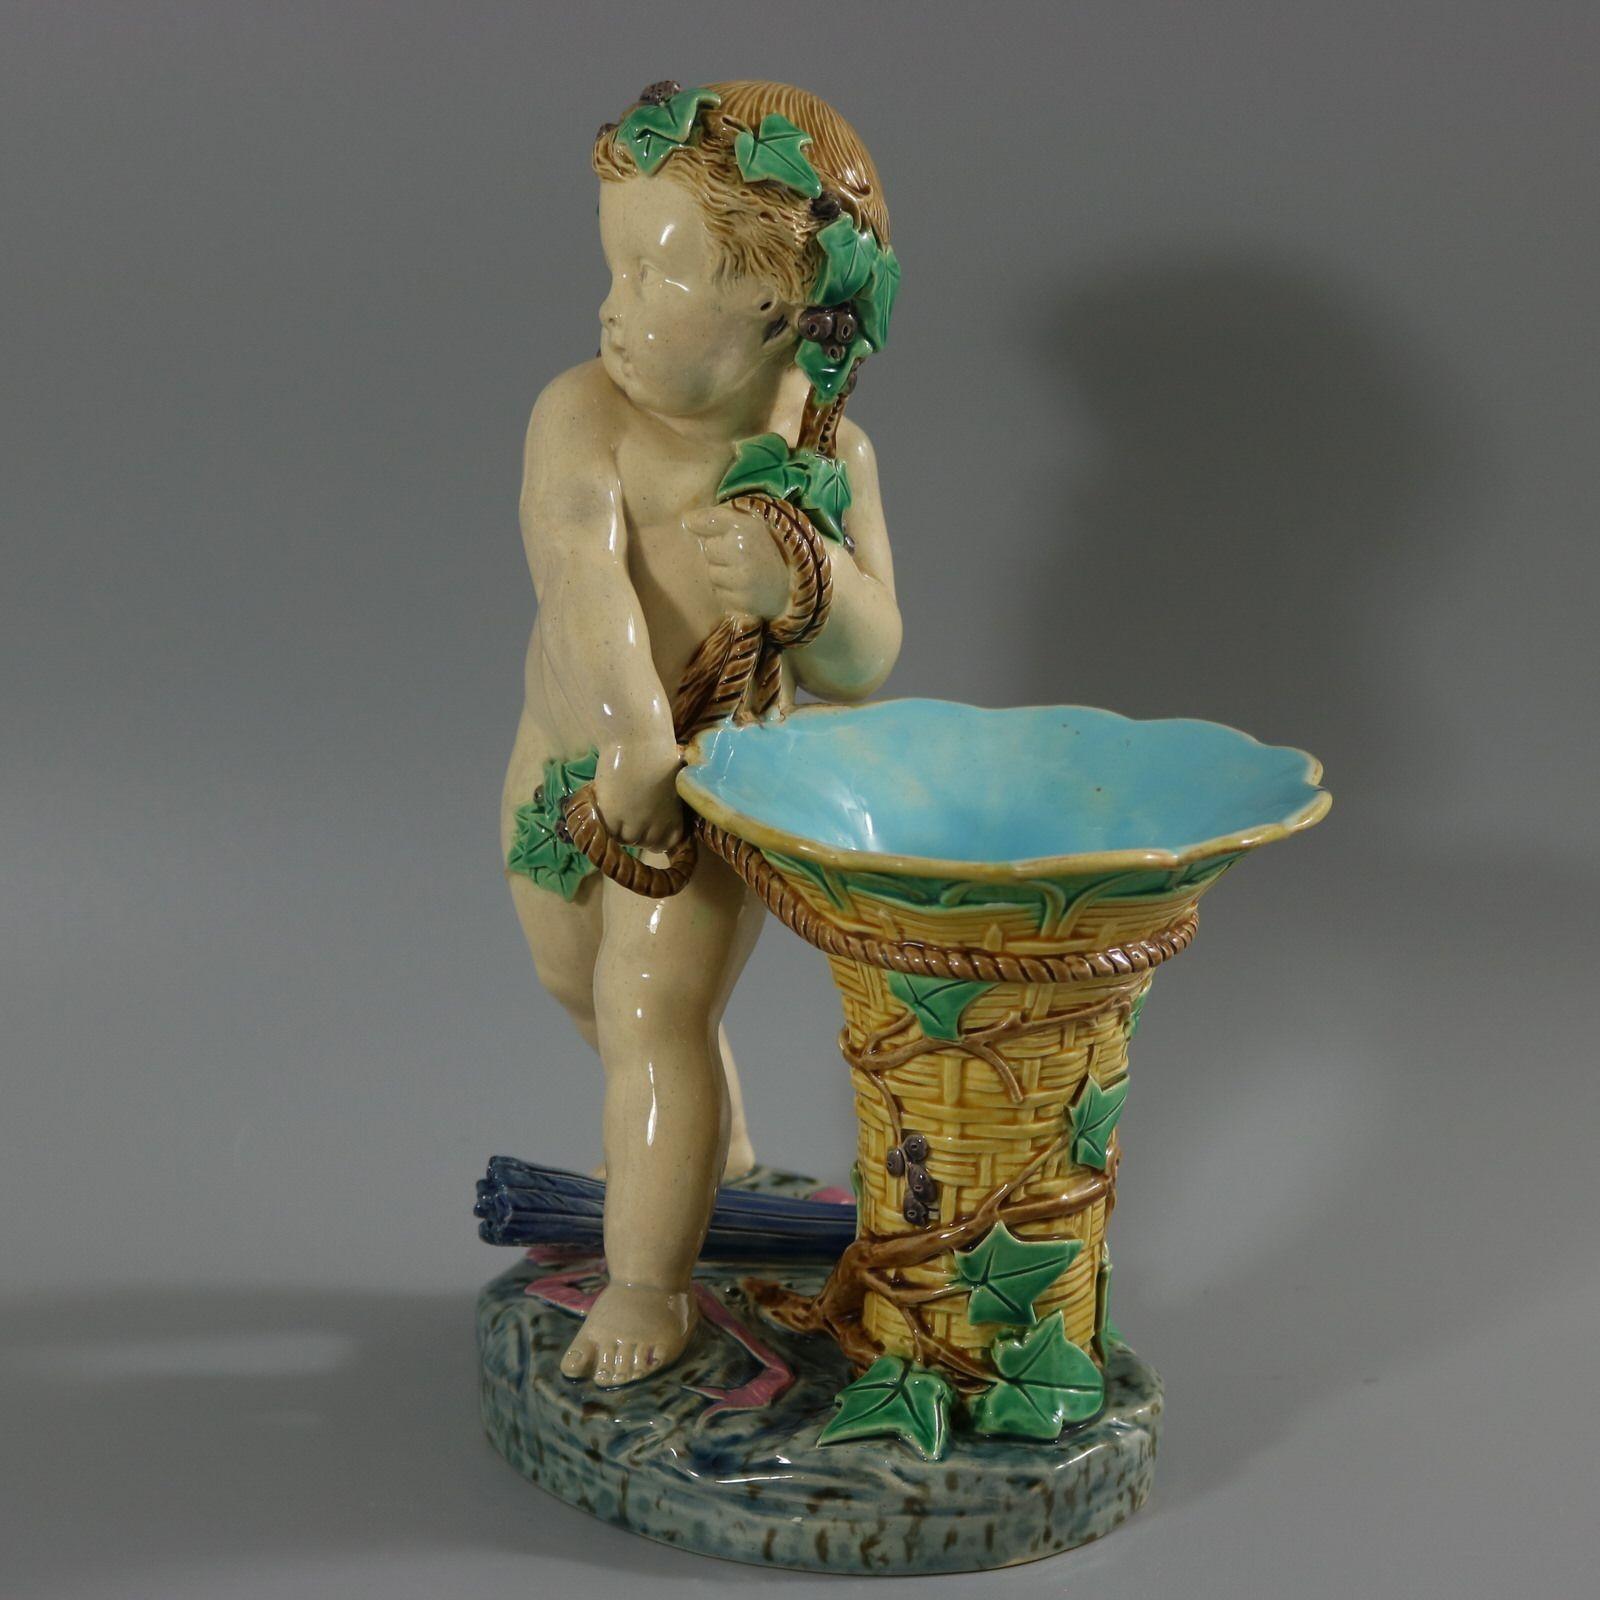 Figurale Vase aus Minton Majolika mit einem Putten, der einen Korb hält und zwischen seinen Füßen einen Köcher mit Pfeilen trägt. Färbung: Creme, gelb, blau, sind vorherrschend. Das Stück trägt Herstellermarken für die Töpferei Minton. Es trägt eine